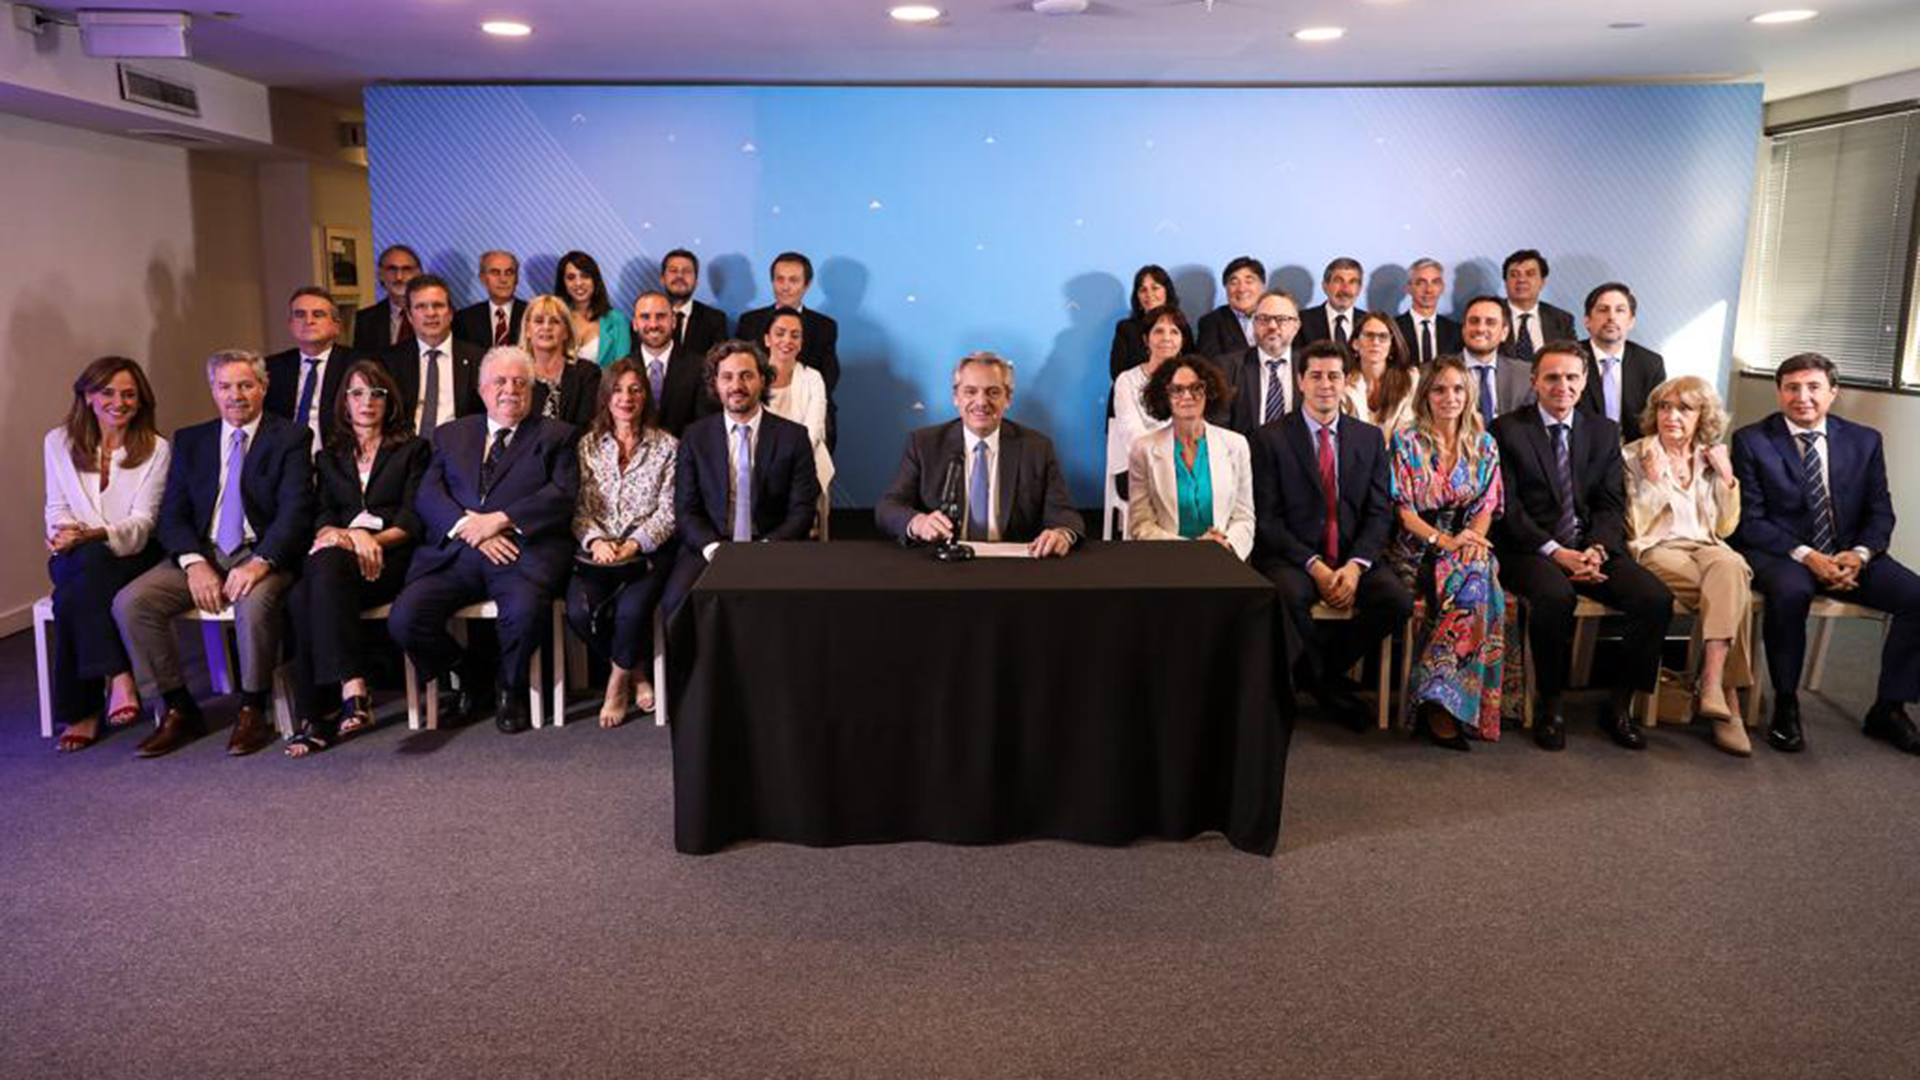 La foto de la presentación del Gabinete original, con los 21 ministros y otros funcionarios designados en cargos clave
